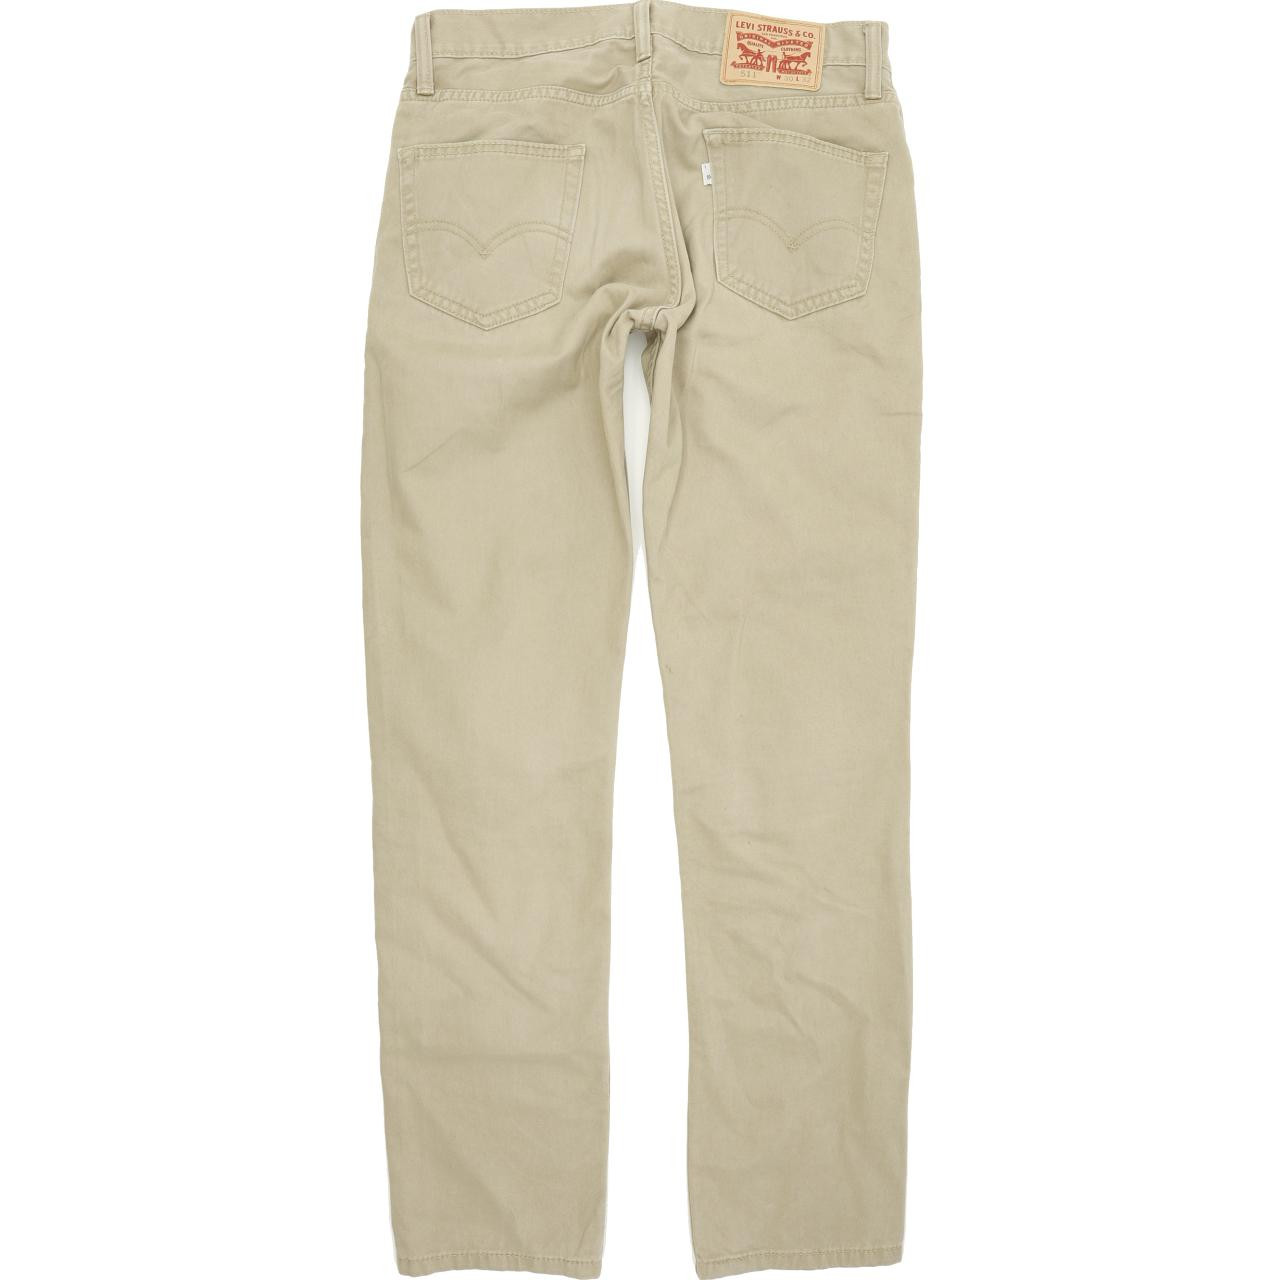 Levi's Men's 511 Slim Fit Jeans Beige Size W32 L32 Waterless